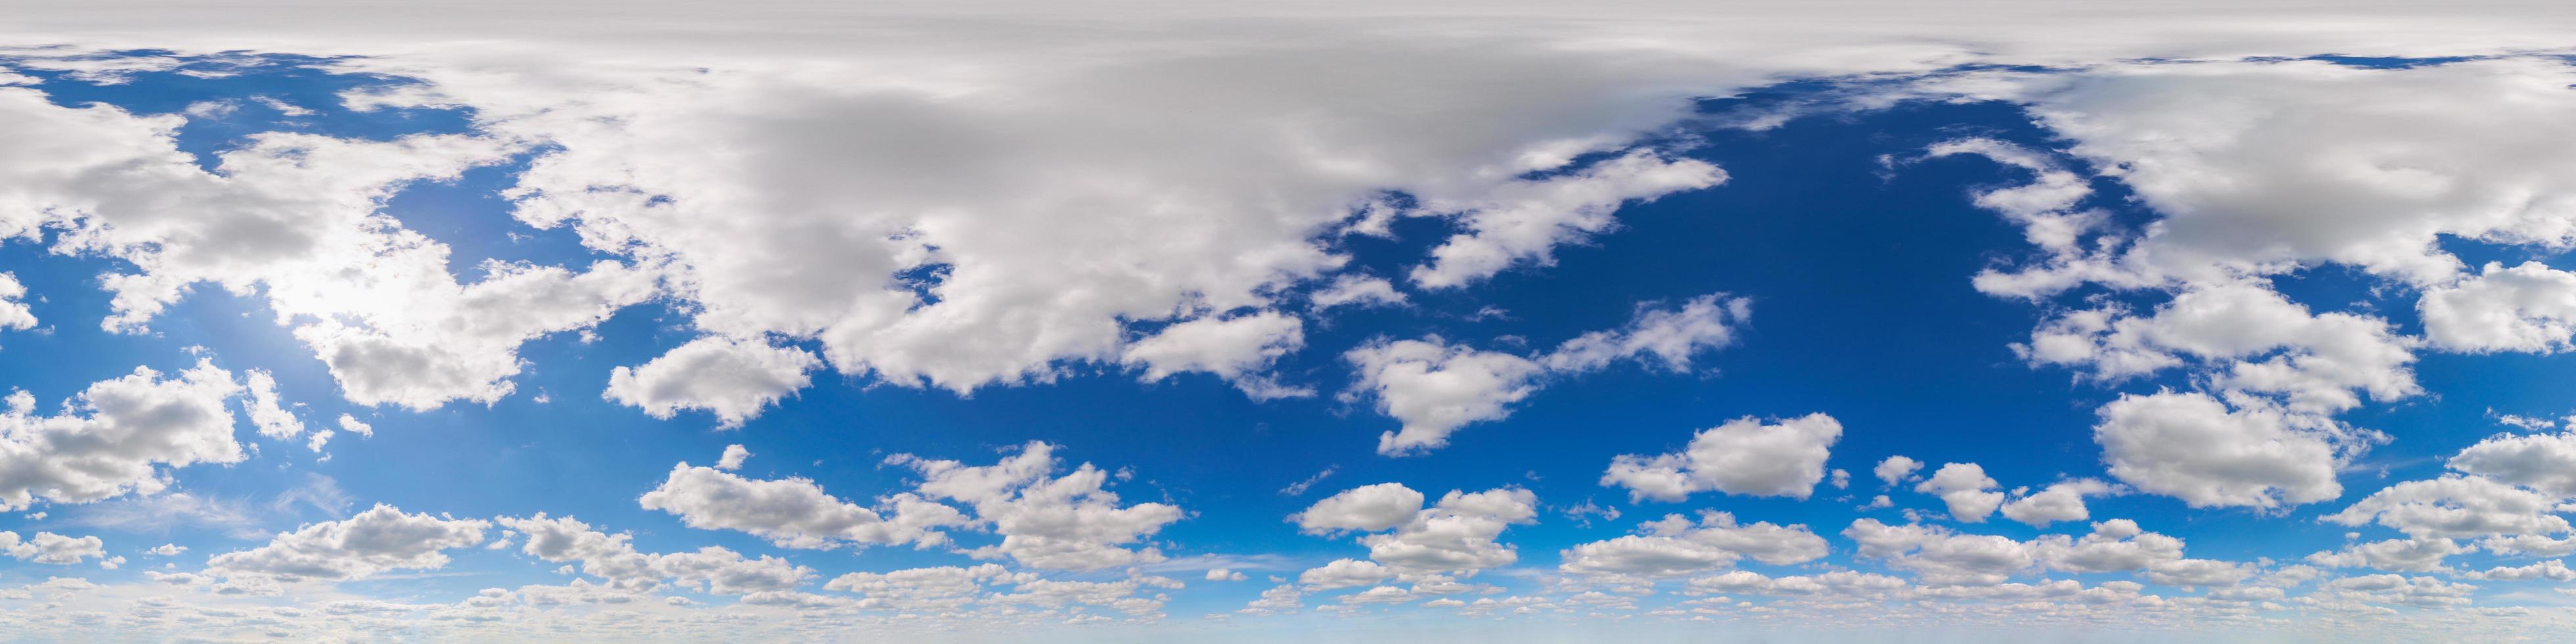 naadloos 360 graden hoek visie blauw lucht met wolken met zenit in equirectangular projectie - bovenste voor de helft van de gebied foto